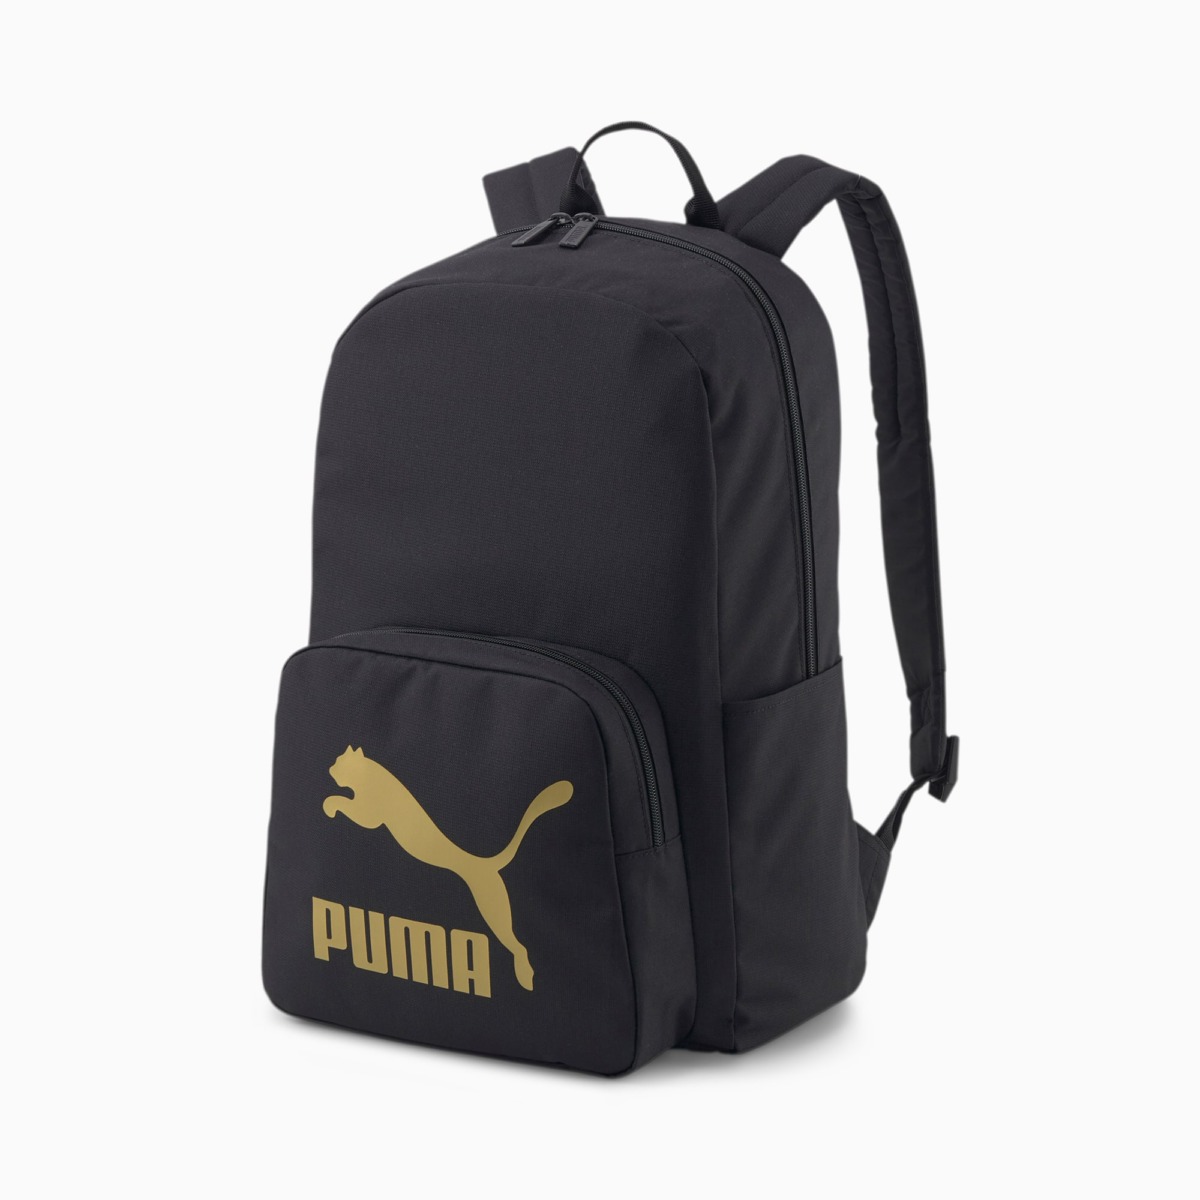 Puma Black Classics Archive Backpack Men Mens BAGS GOOFASH